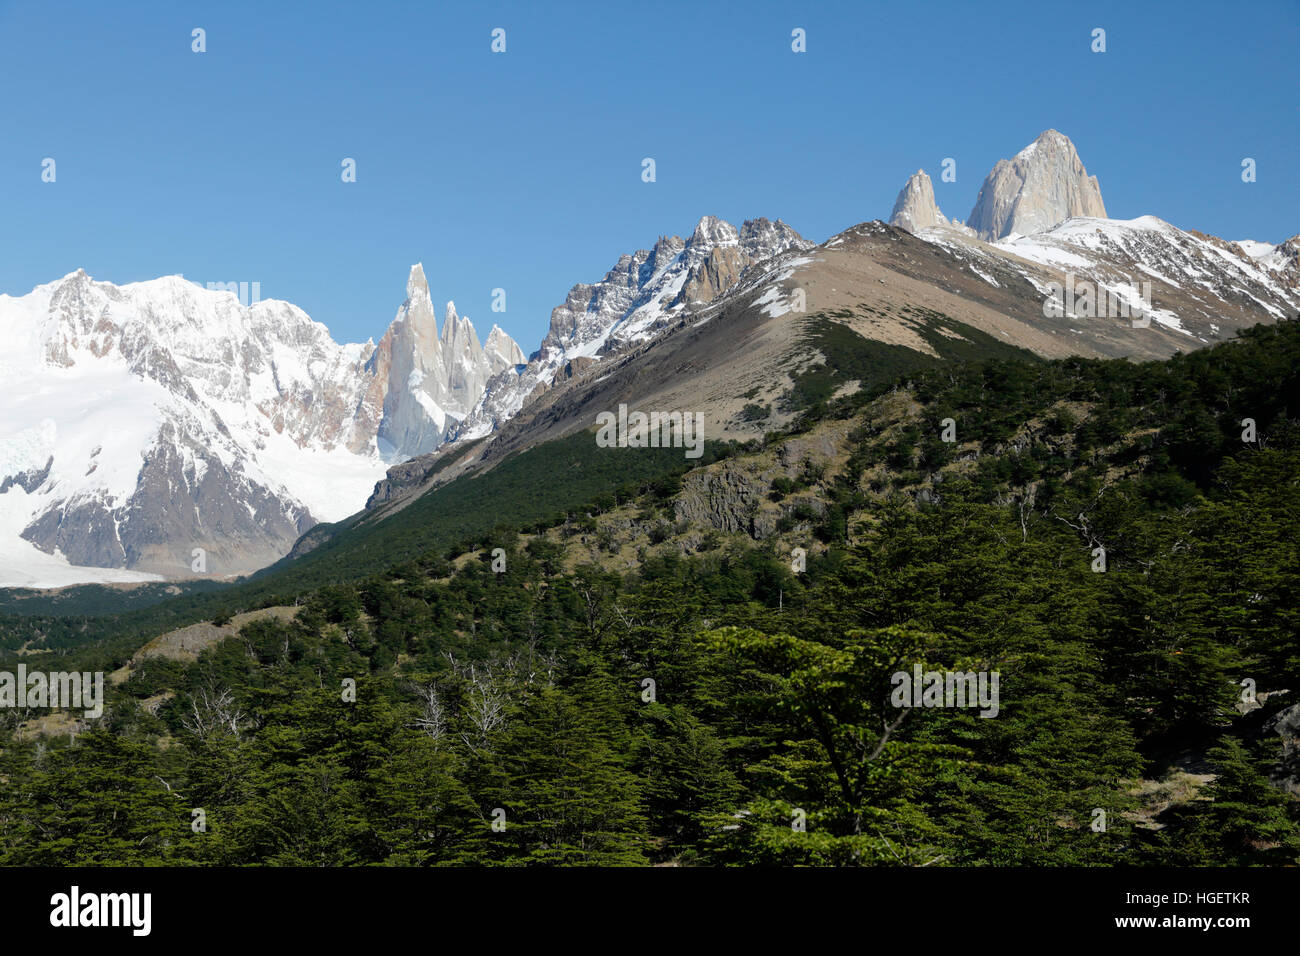 Blick auf den Cerro Torre und Mount Fitz Roy vom Mirador del Cerro Torre, El Chalten, Patagonien, Argentinien, Südamerika Stockfoto